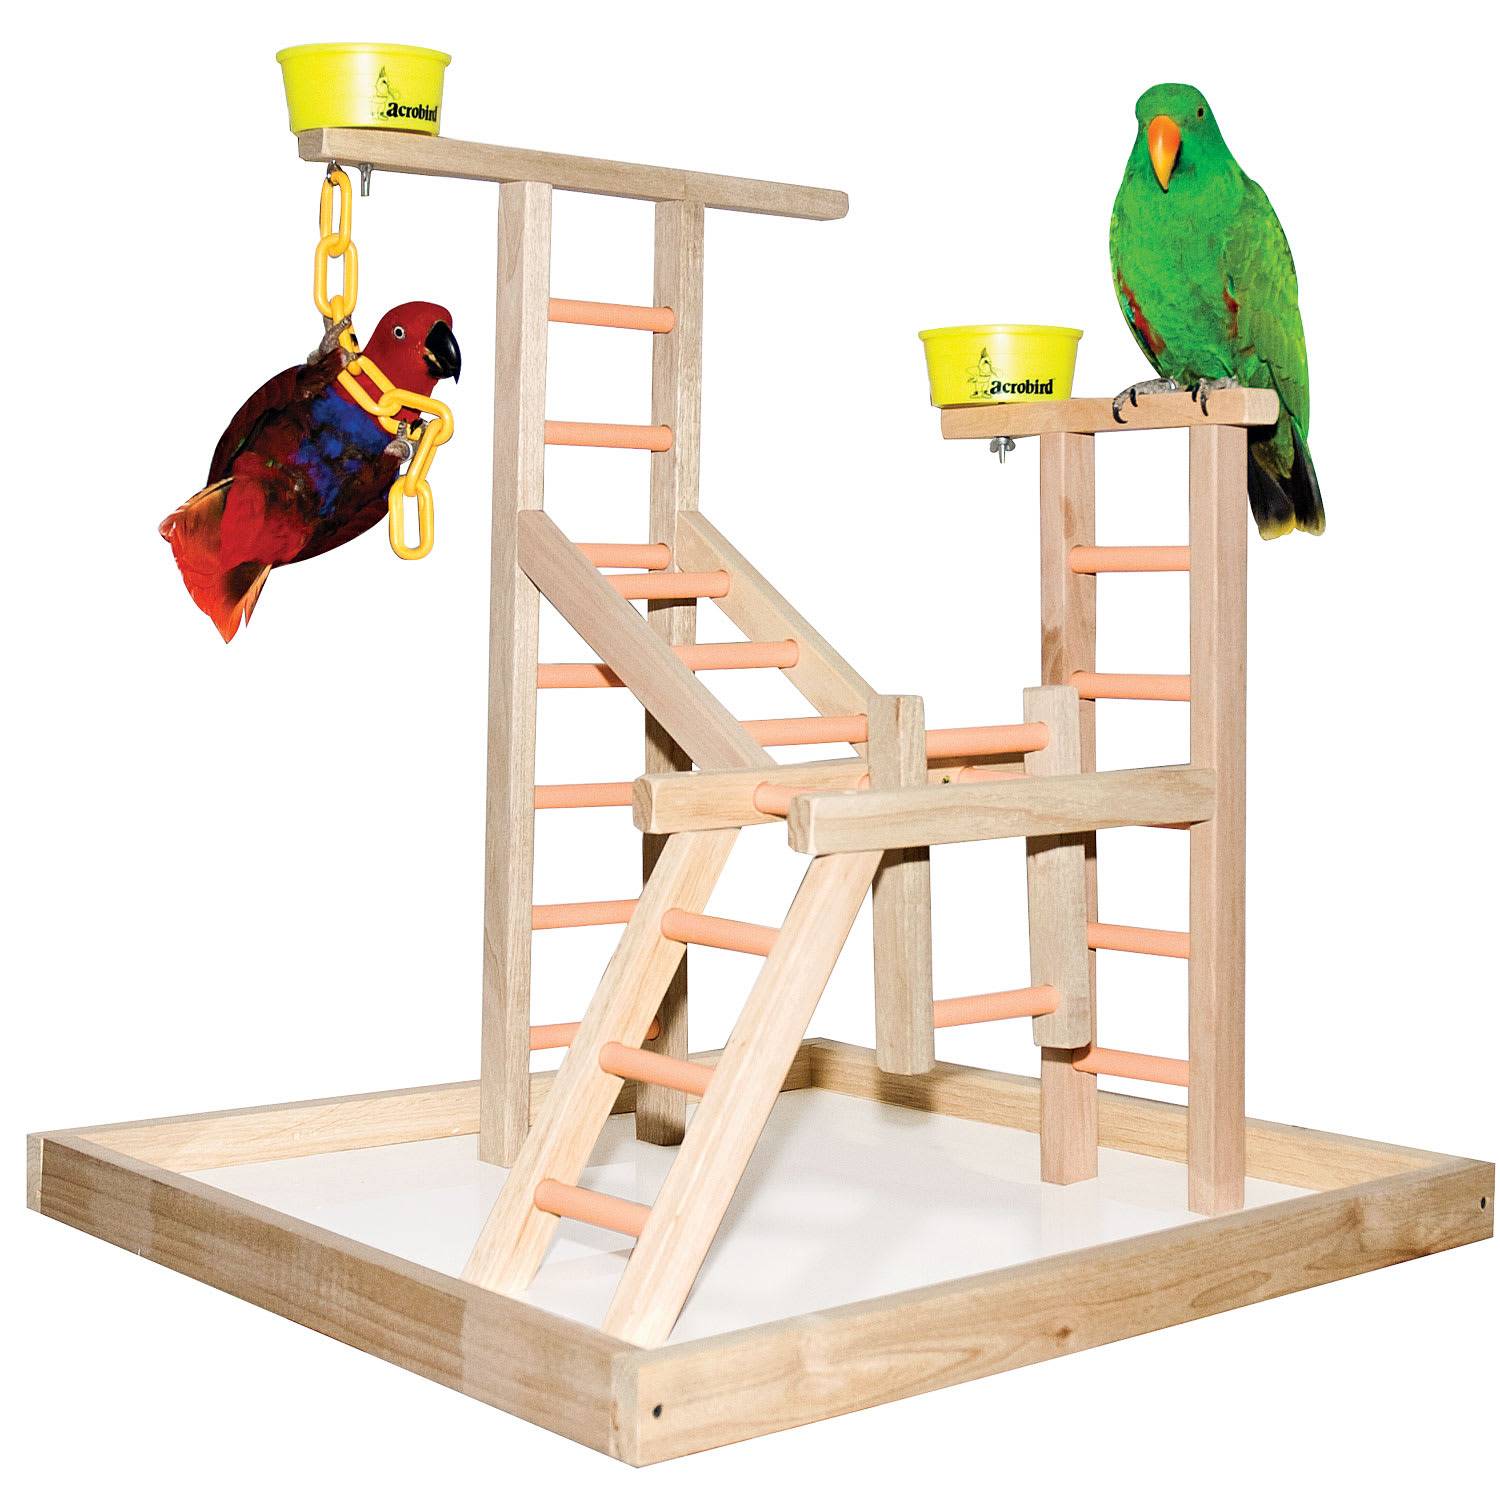 Стенд для попугая: как правильно подобрать игровую площадку для волнистых птиц и можно ли сделать своими руками